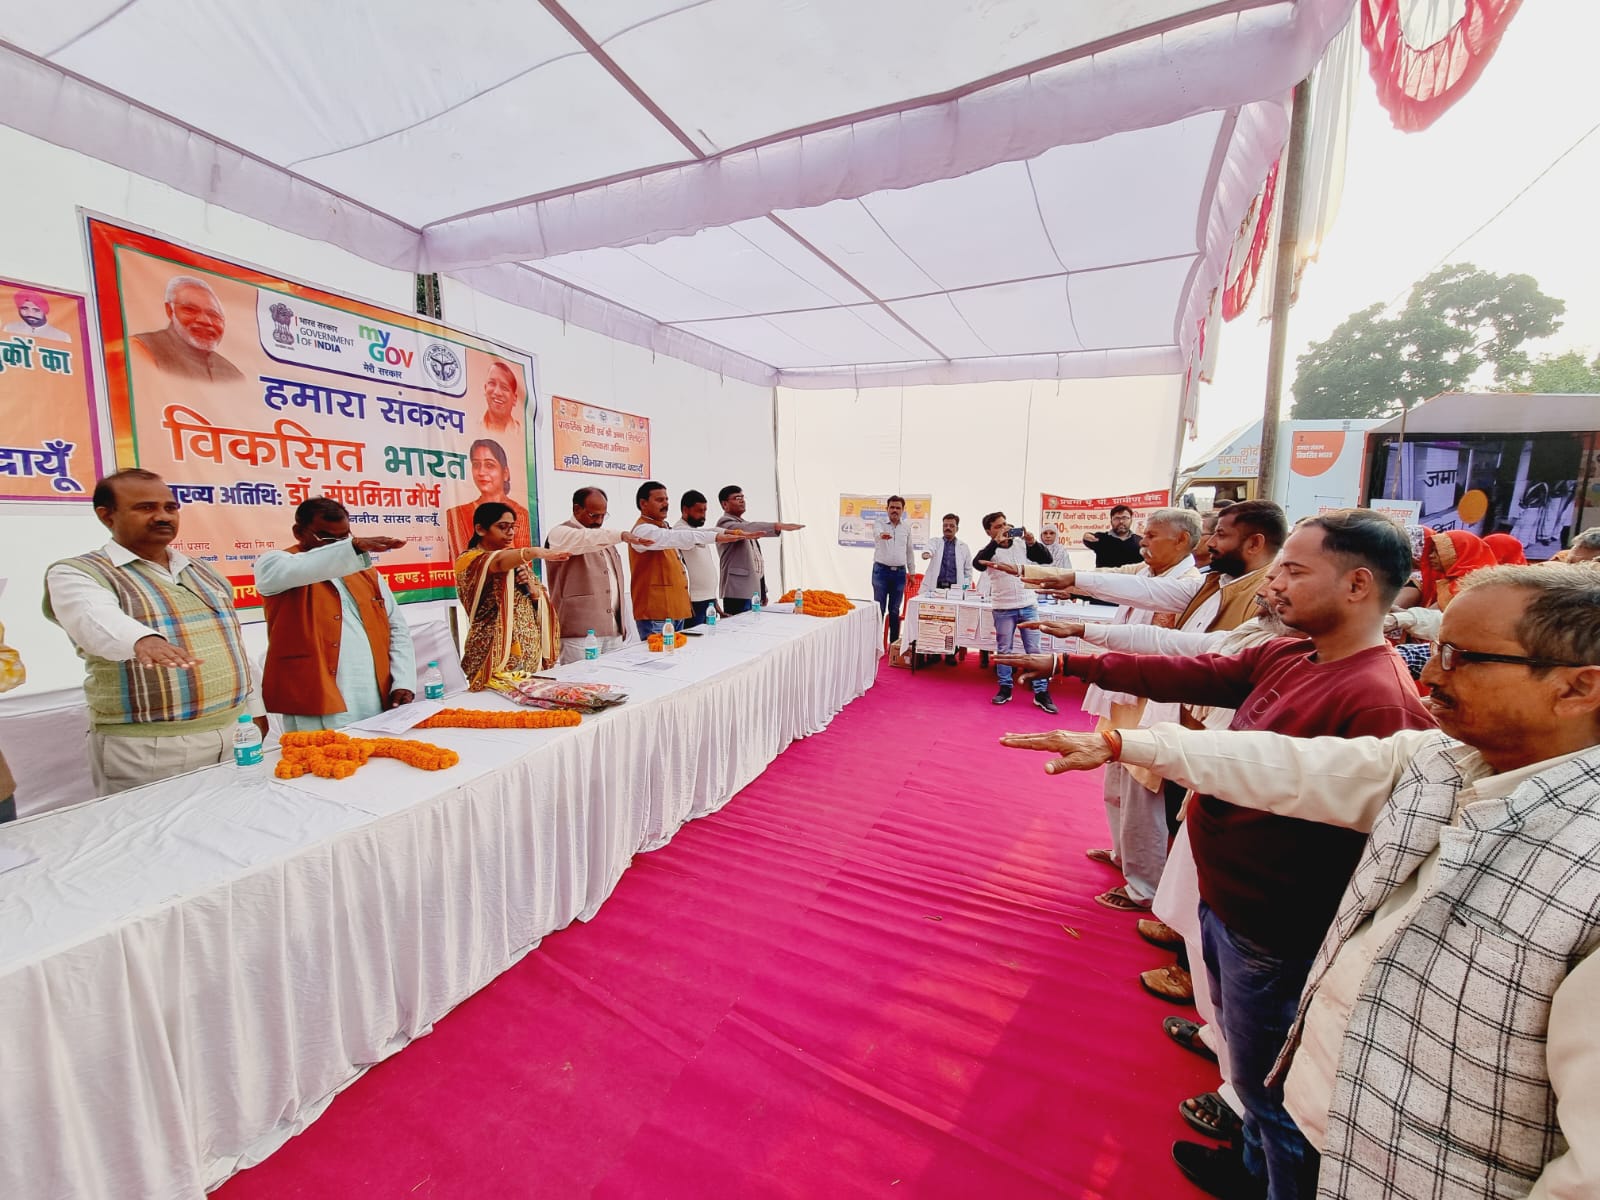 Uttar Pradesh News: विकसित यात्रा केंद्र की योजनाओं से लोगों को जोड़ने का अभियान है: सांसद